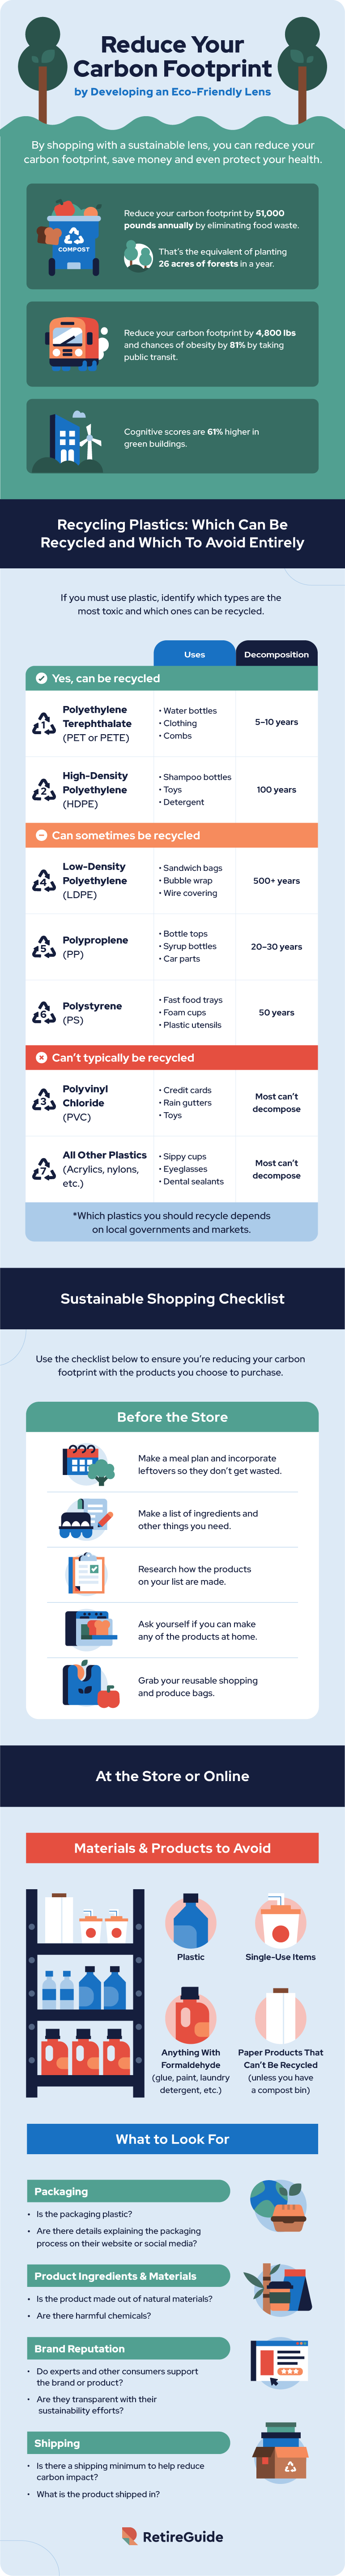 sustainable shopping